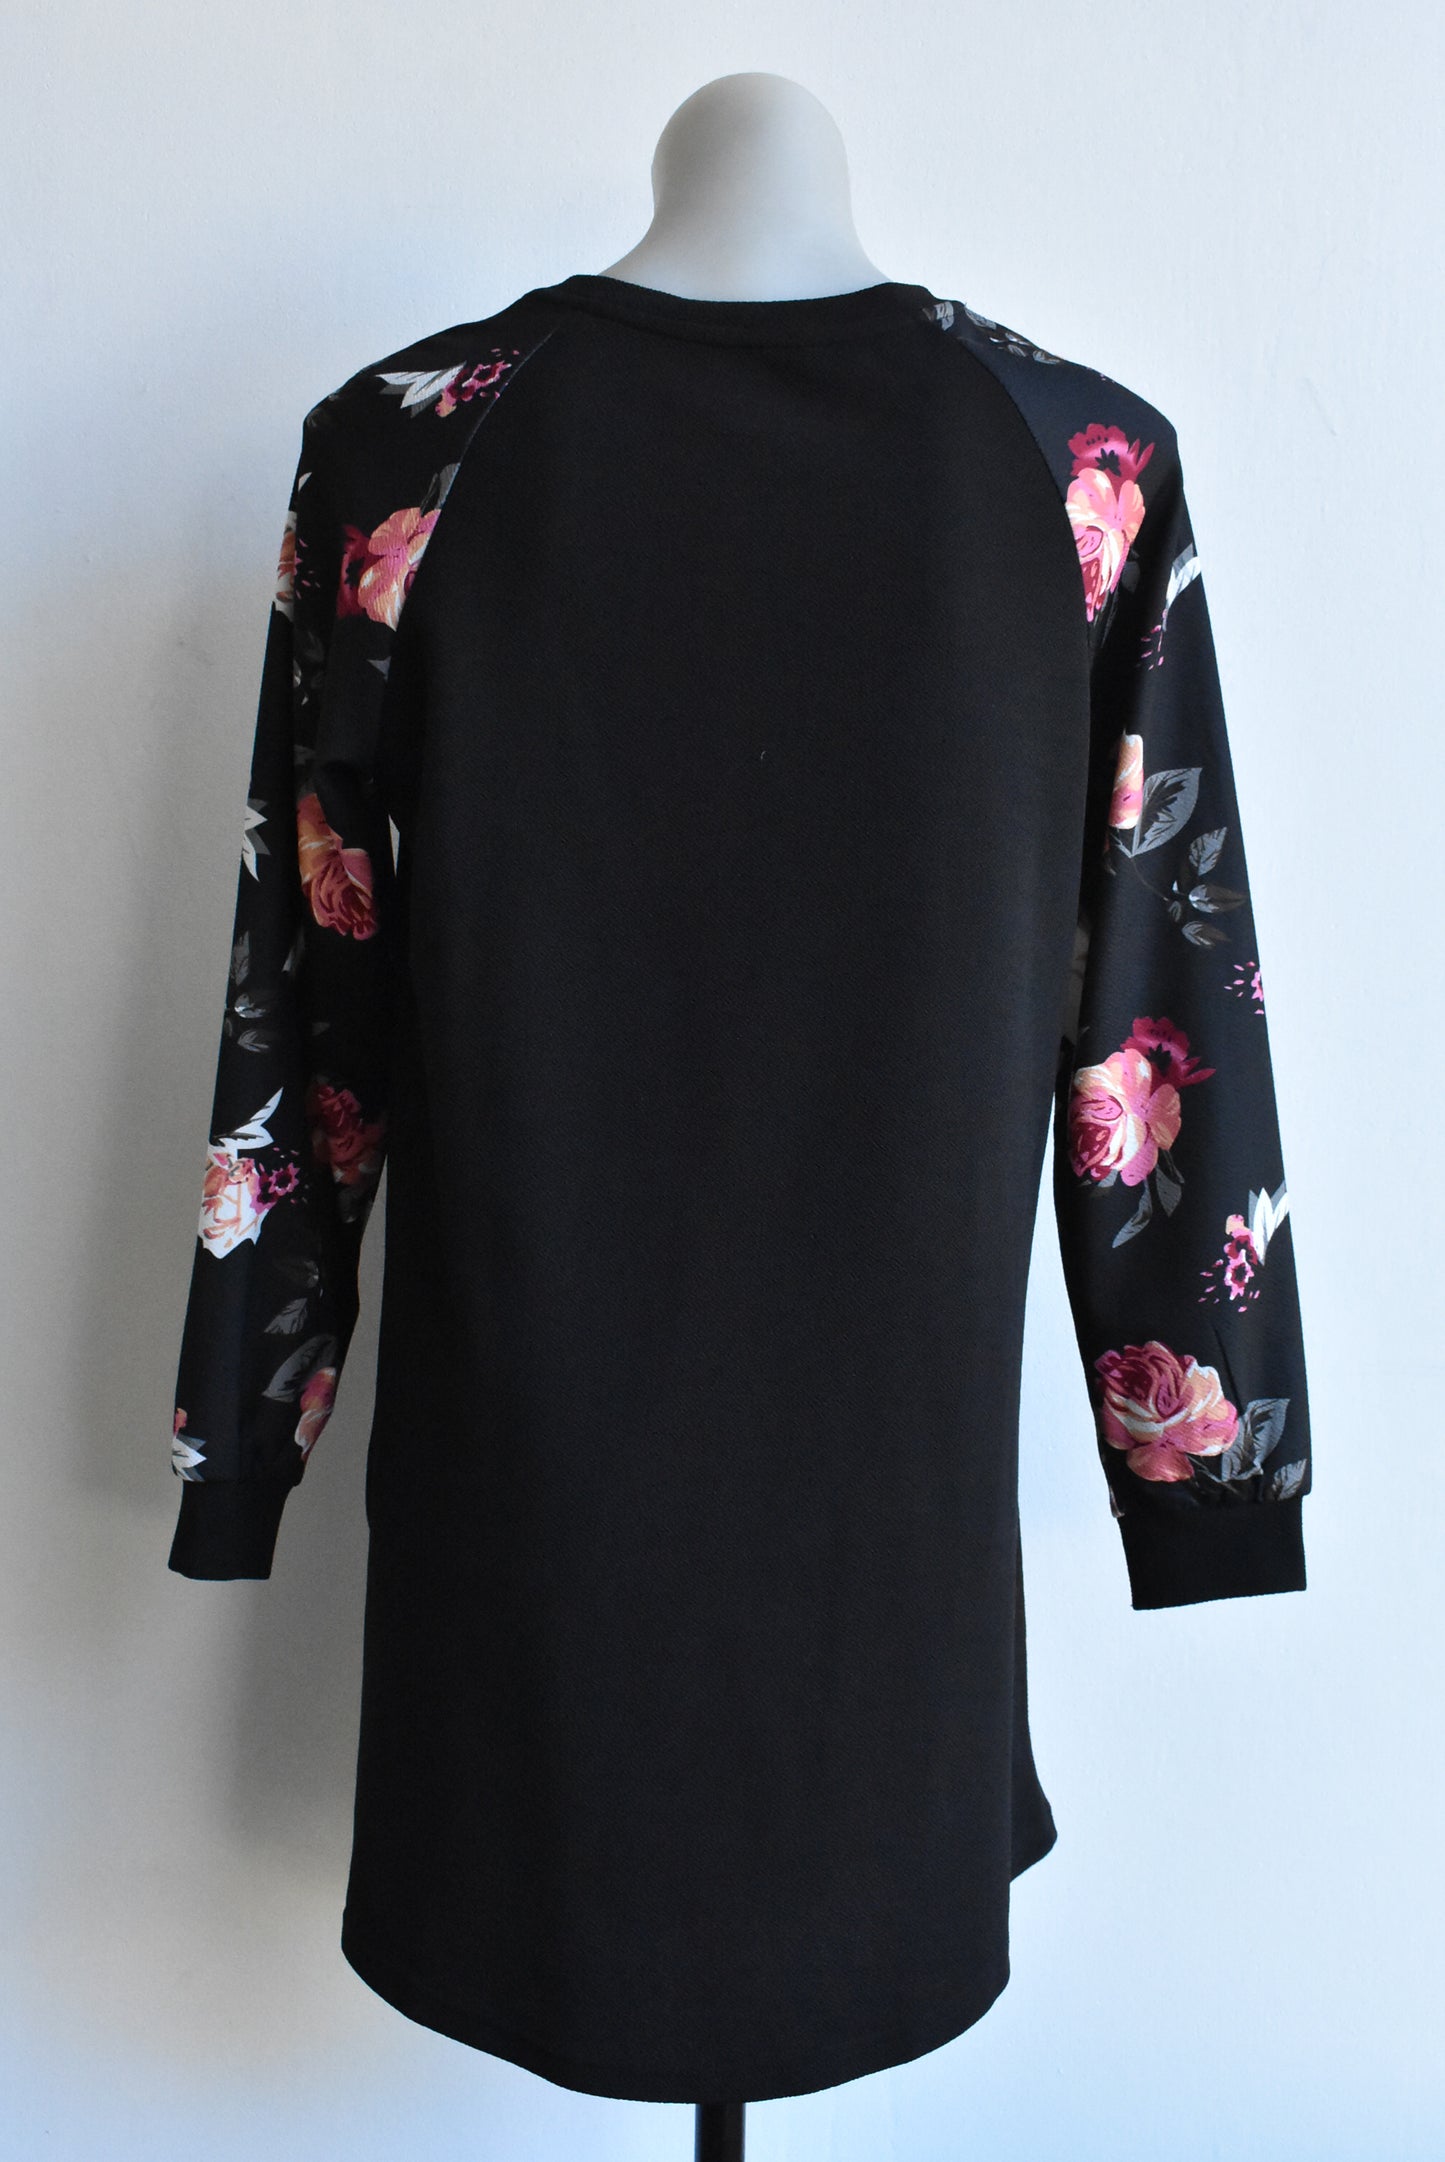 Black floral-sleeved dress/longline top, 14